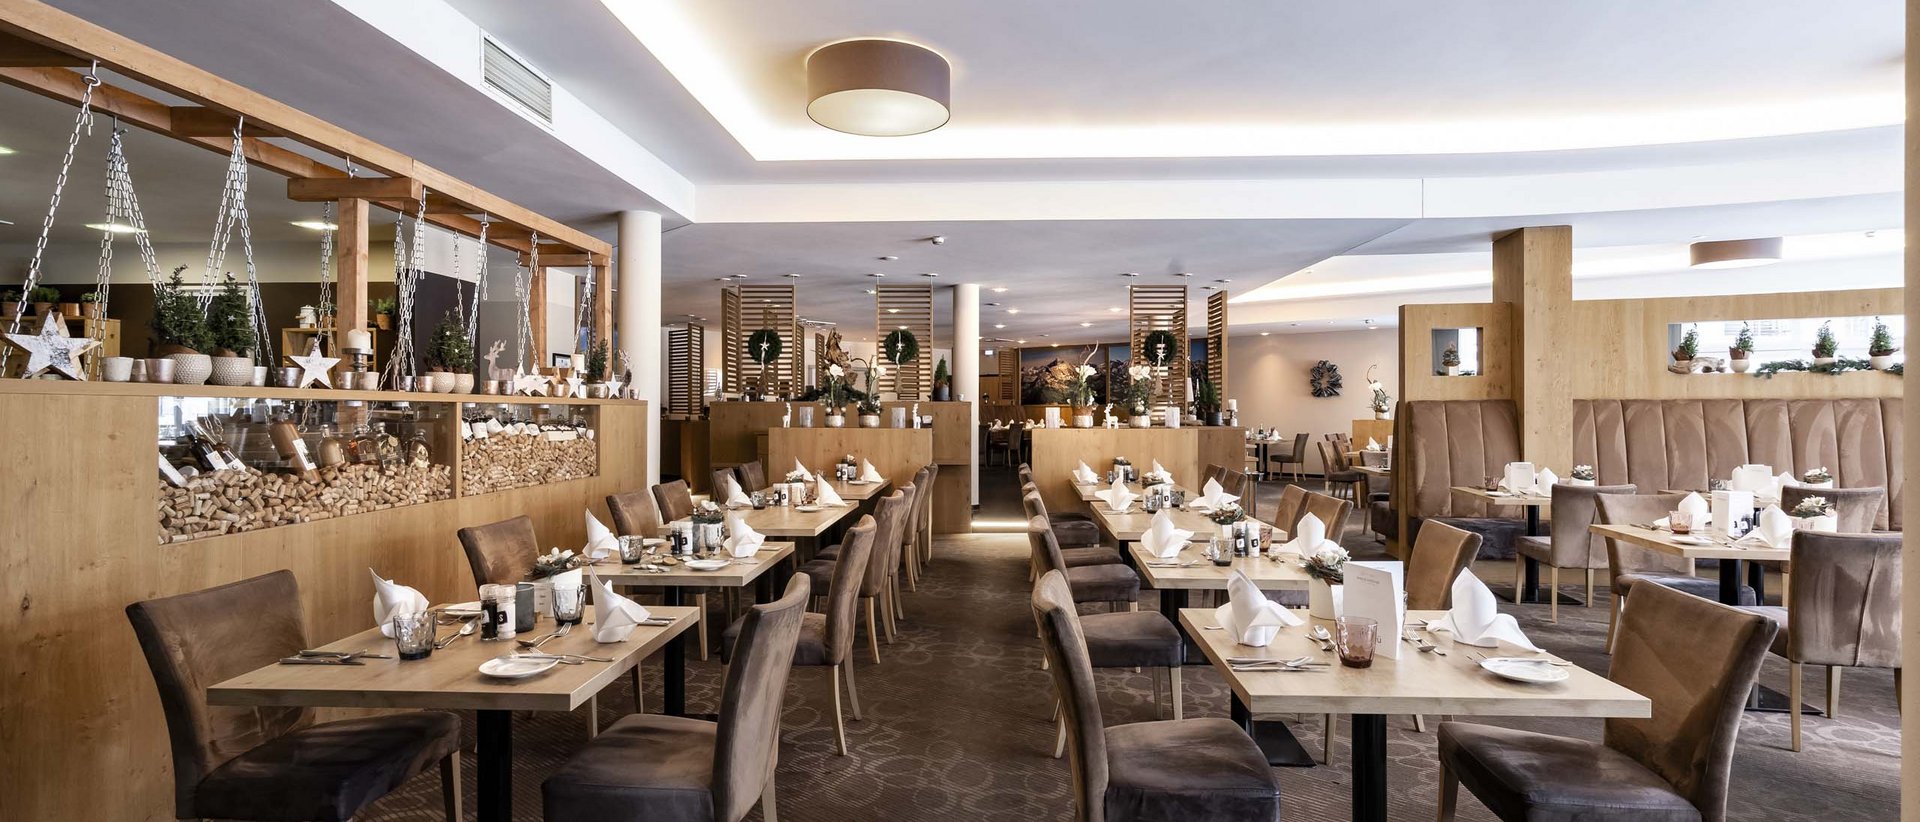 Restaurant, Chalet & Hotel in Deutschland – alles in einem!